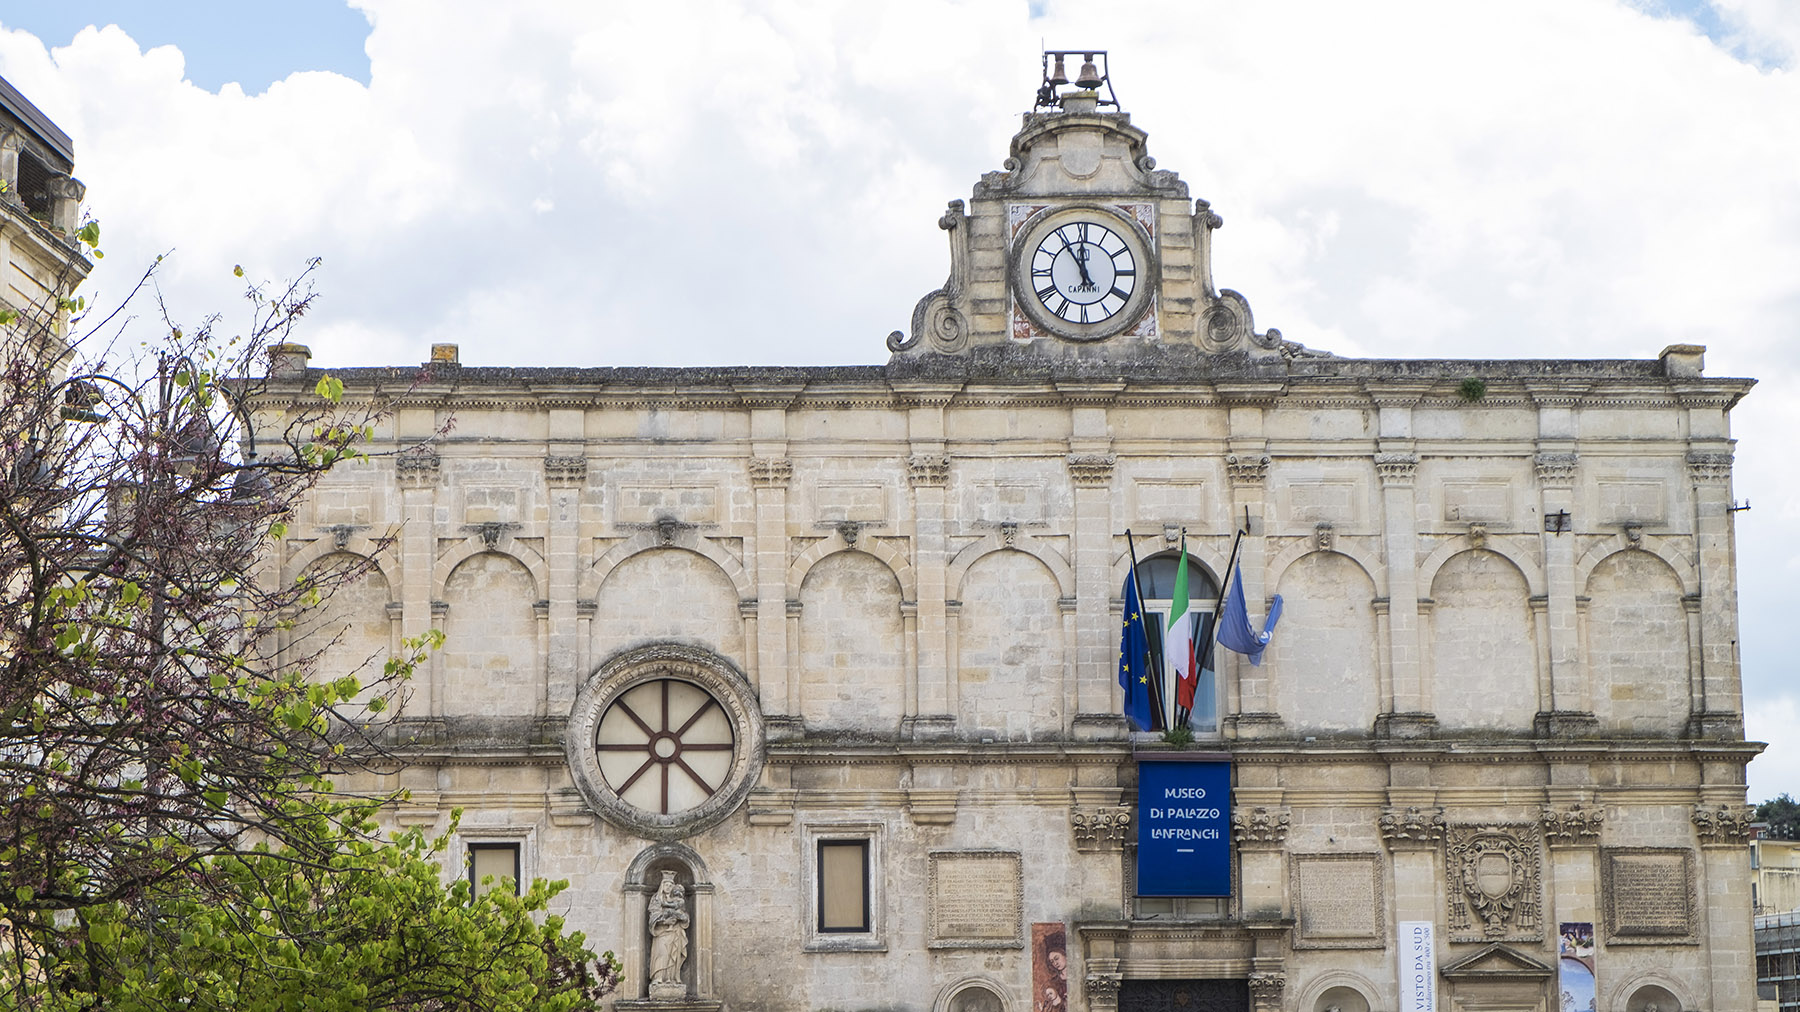 В Италии из музея украли картину Эффект снега Джакомо Ди Кирико